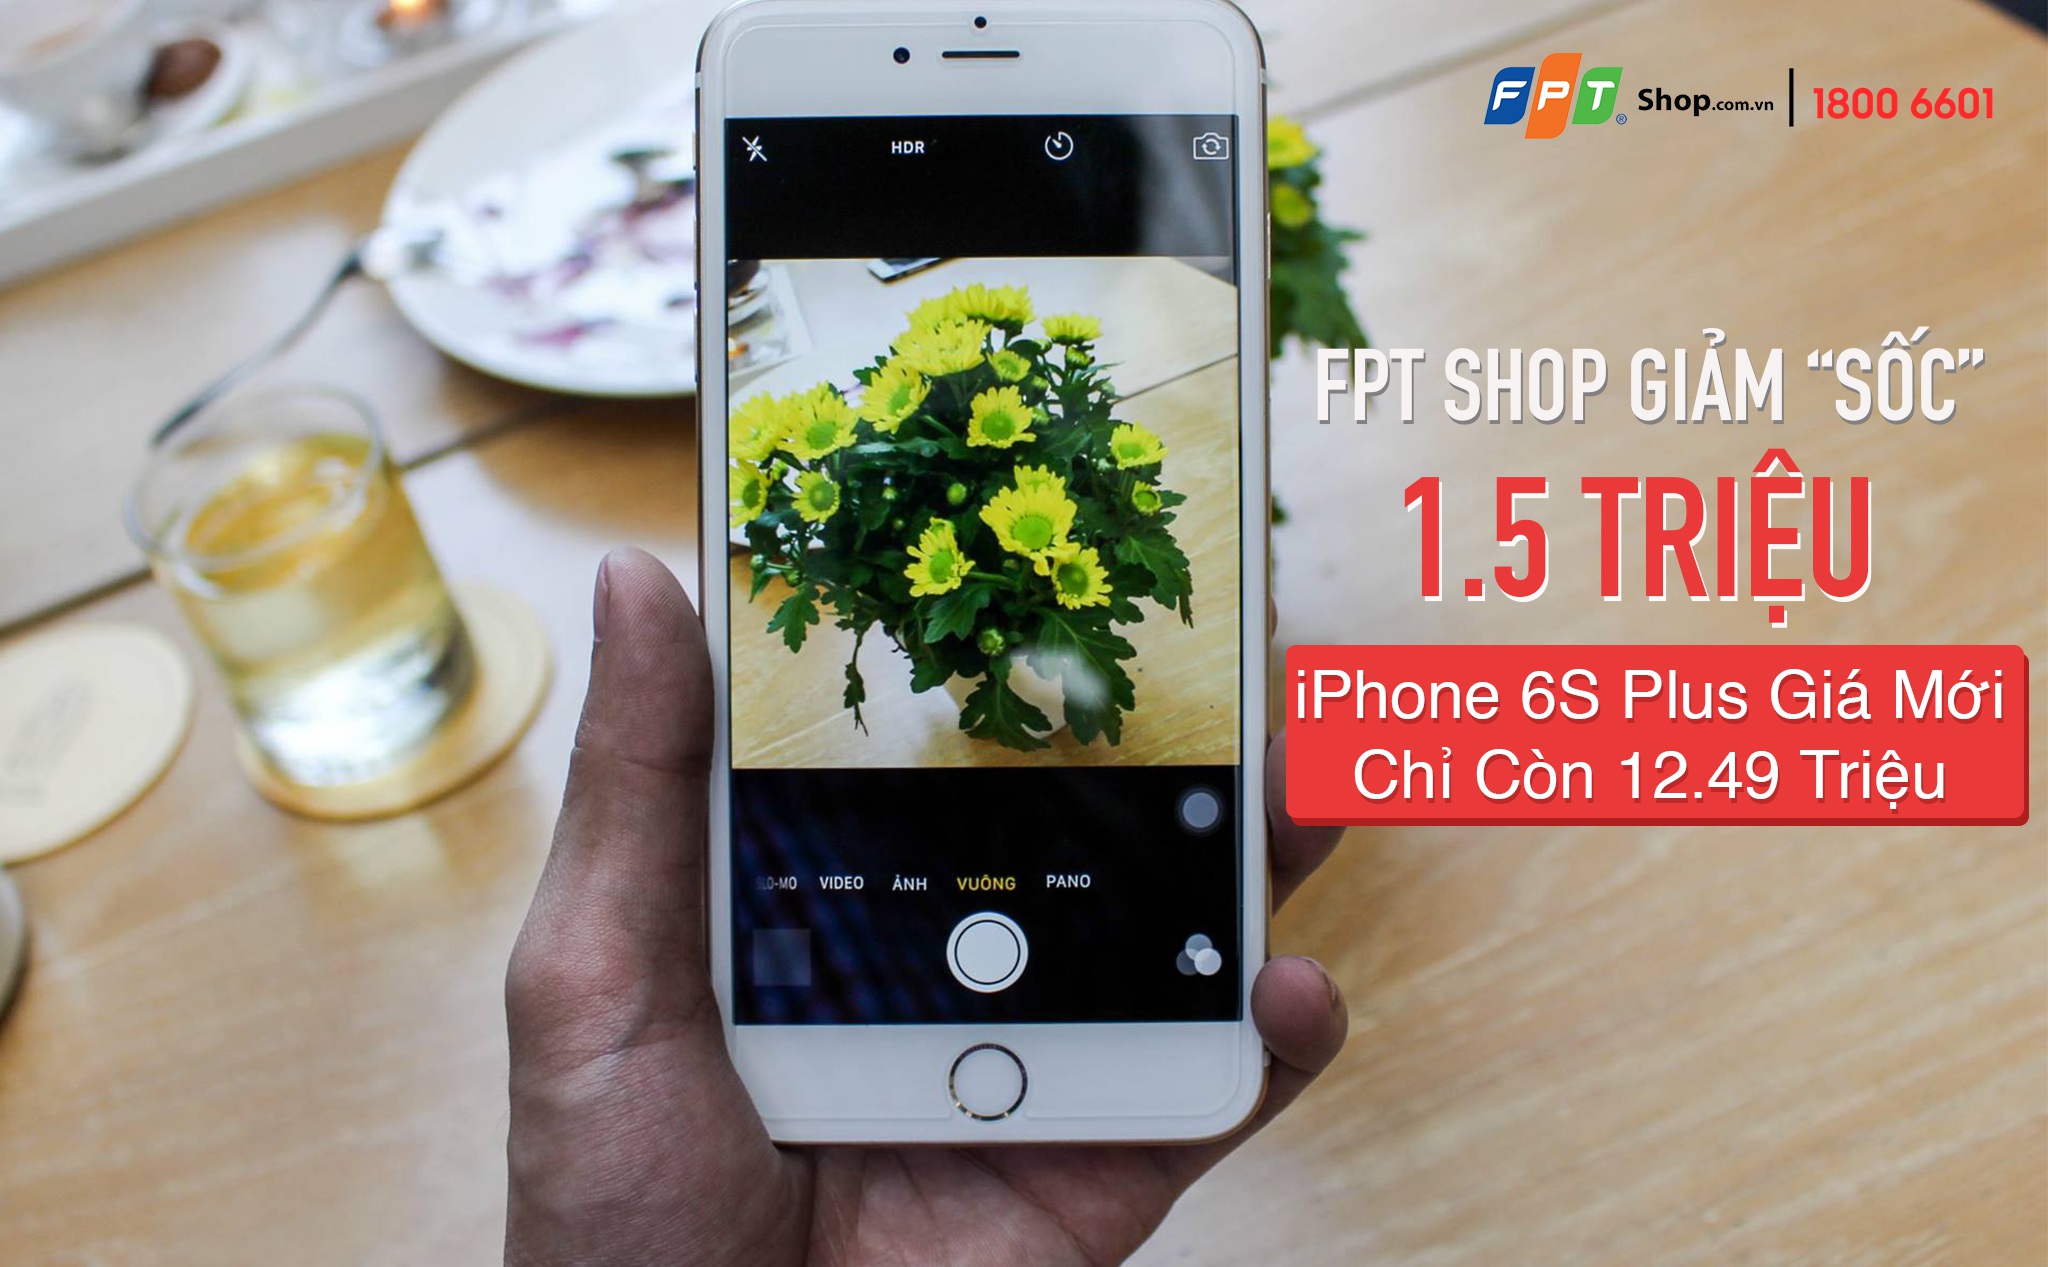 [QC] Giảm sốc 1,5 triệu, iPhone 6s Plus 32GB chỉ còn 12,49 triệu tại FPT Shop